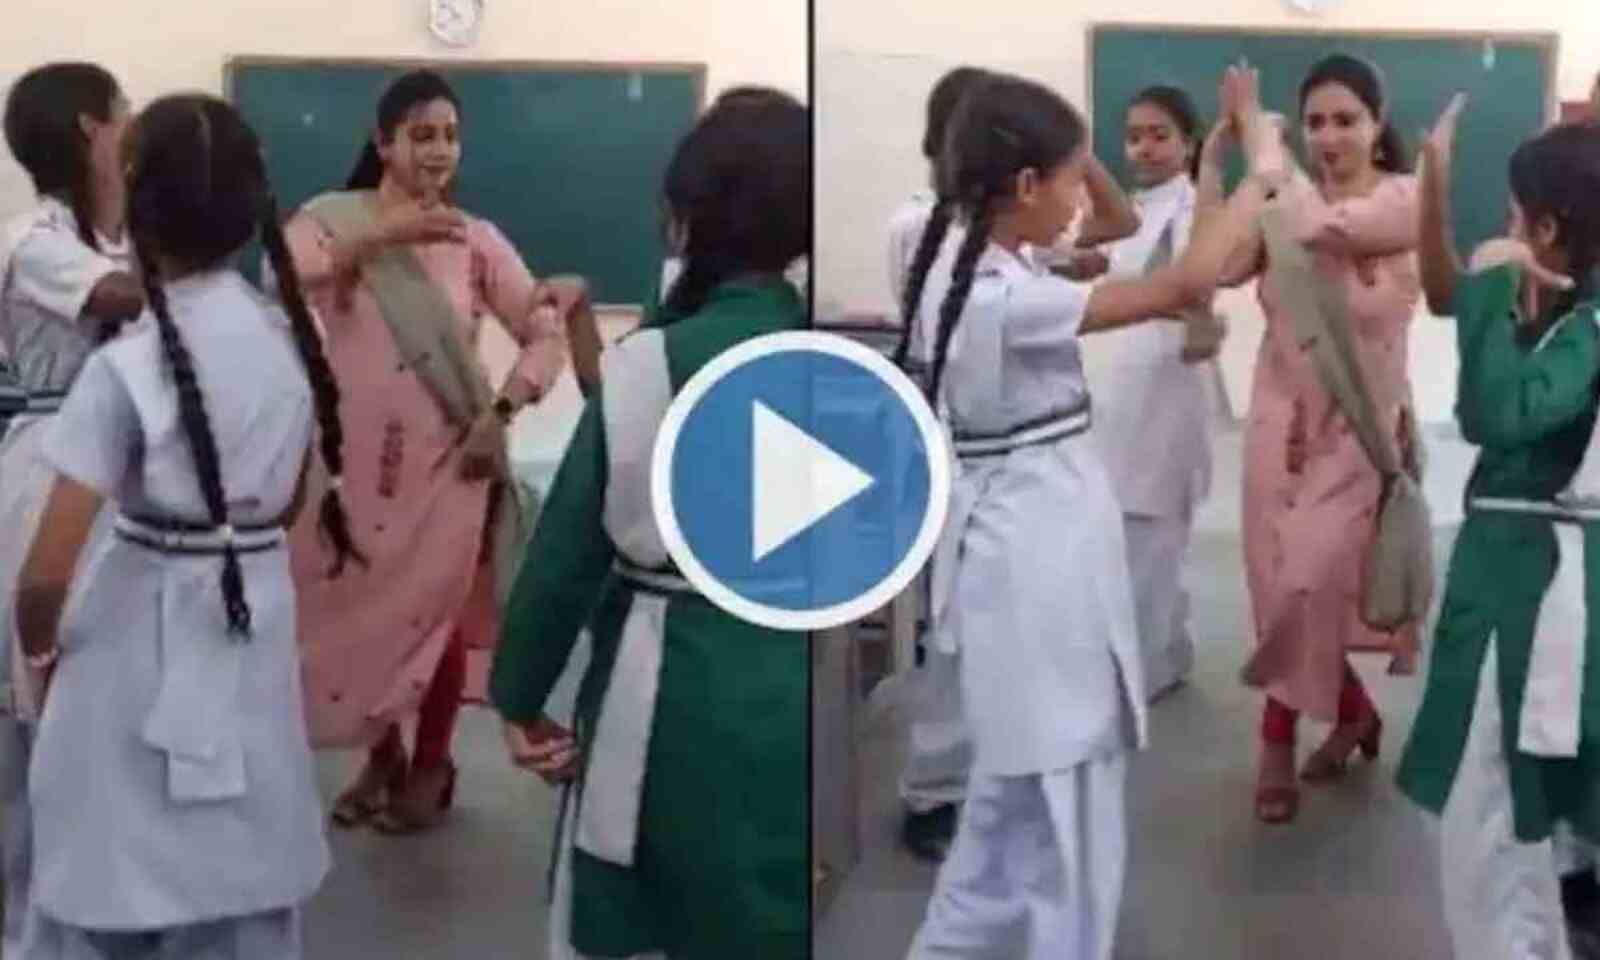 School Ki Ladki Xxx Video - Watch The Trending Video Of Delhi Govt School Teacher Dancing With Girls